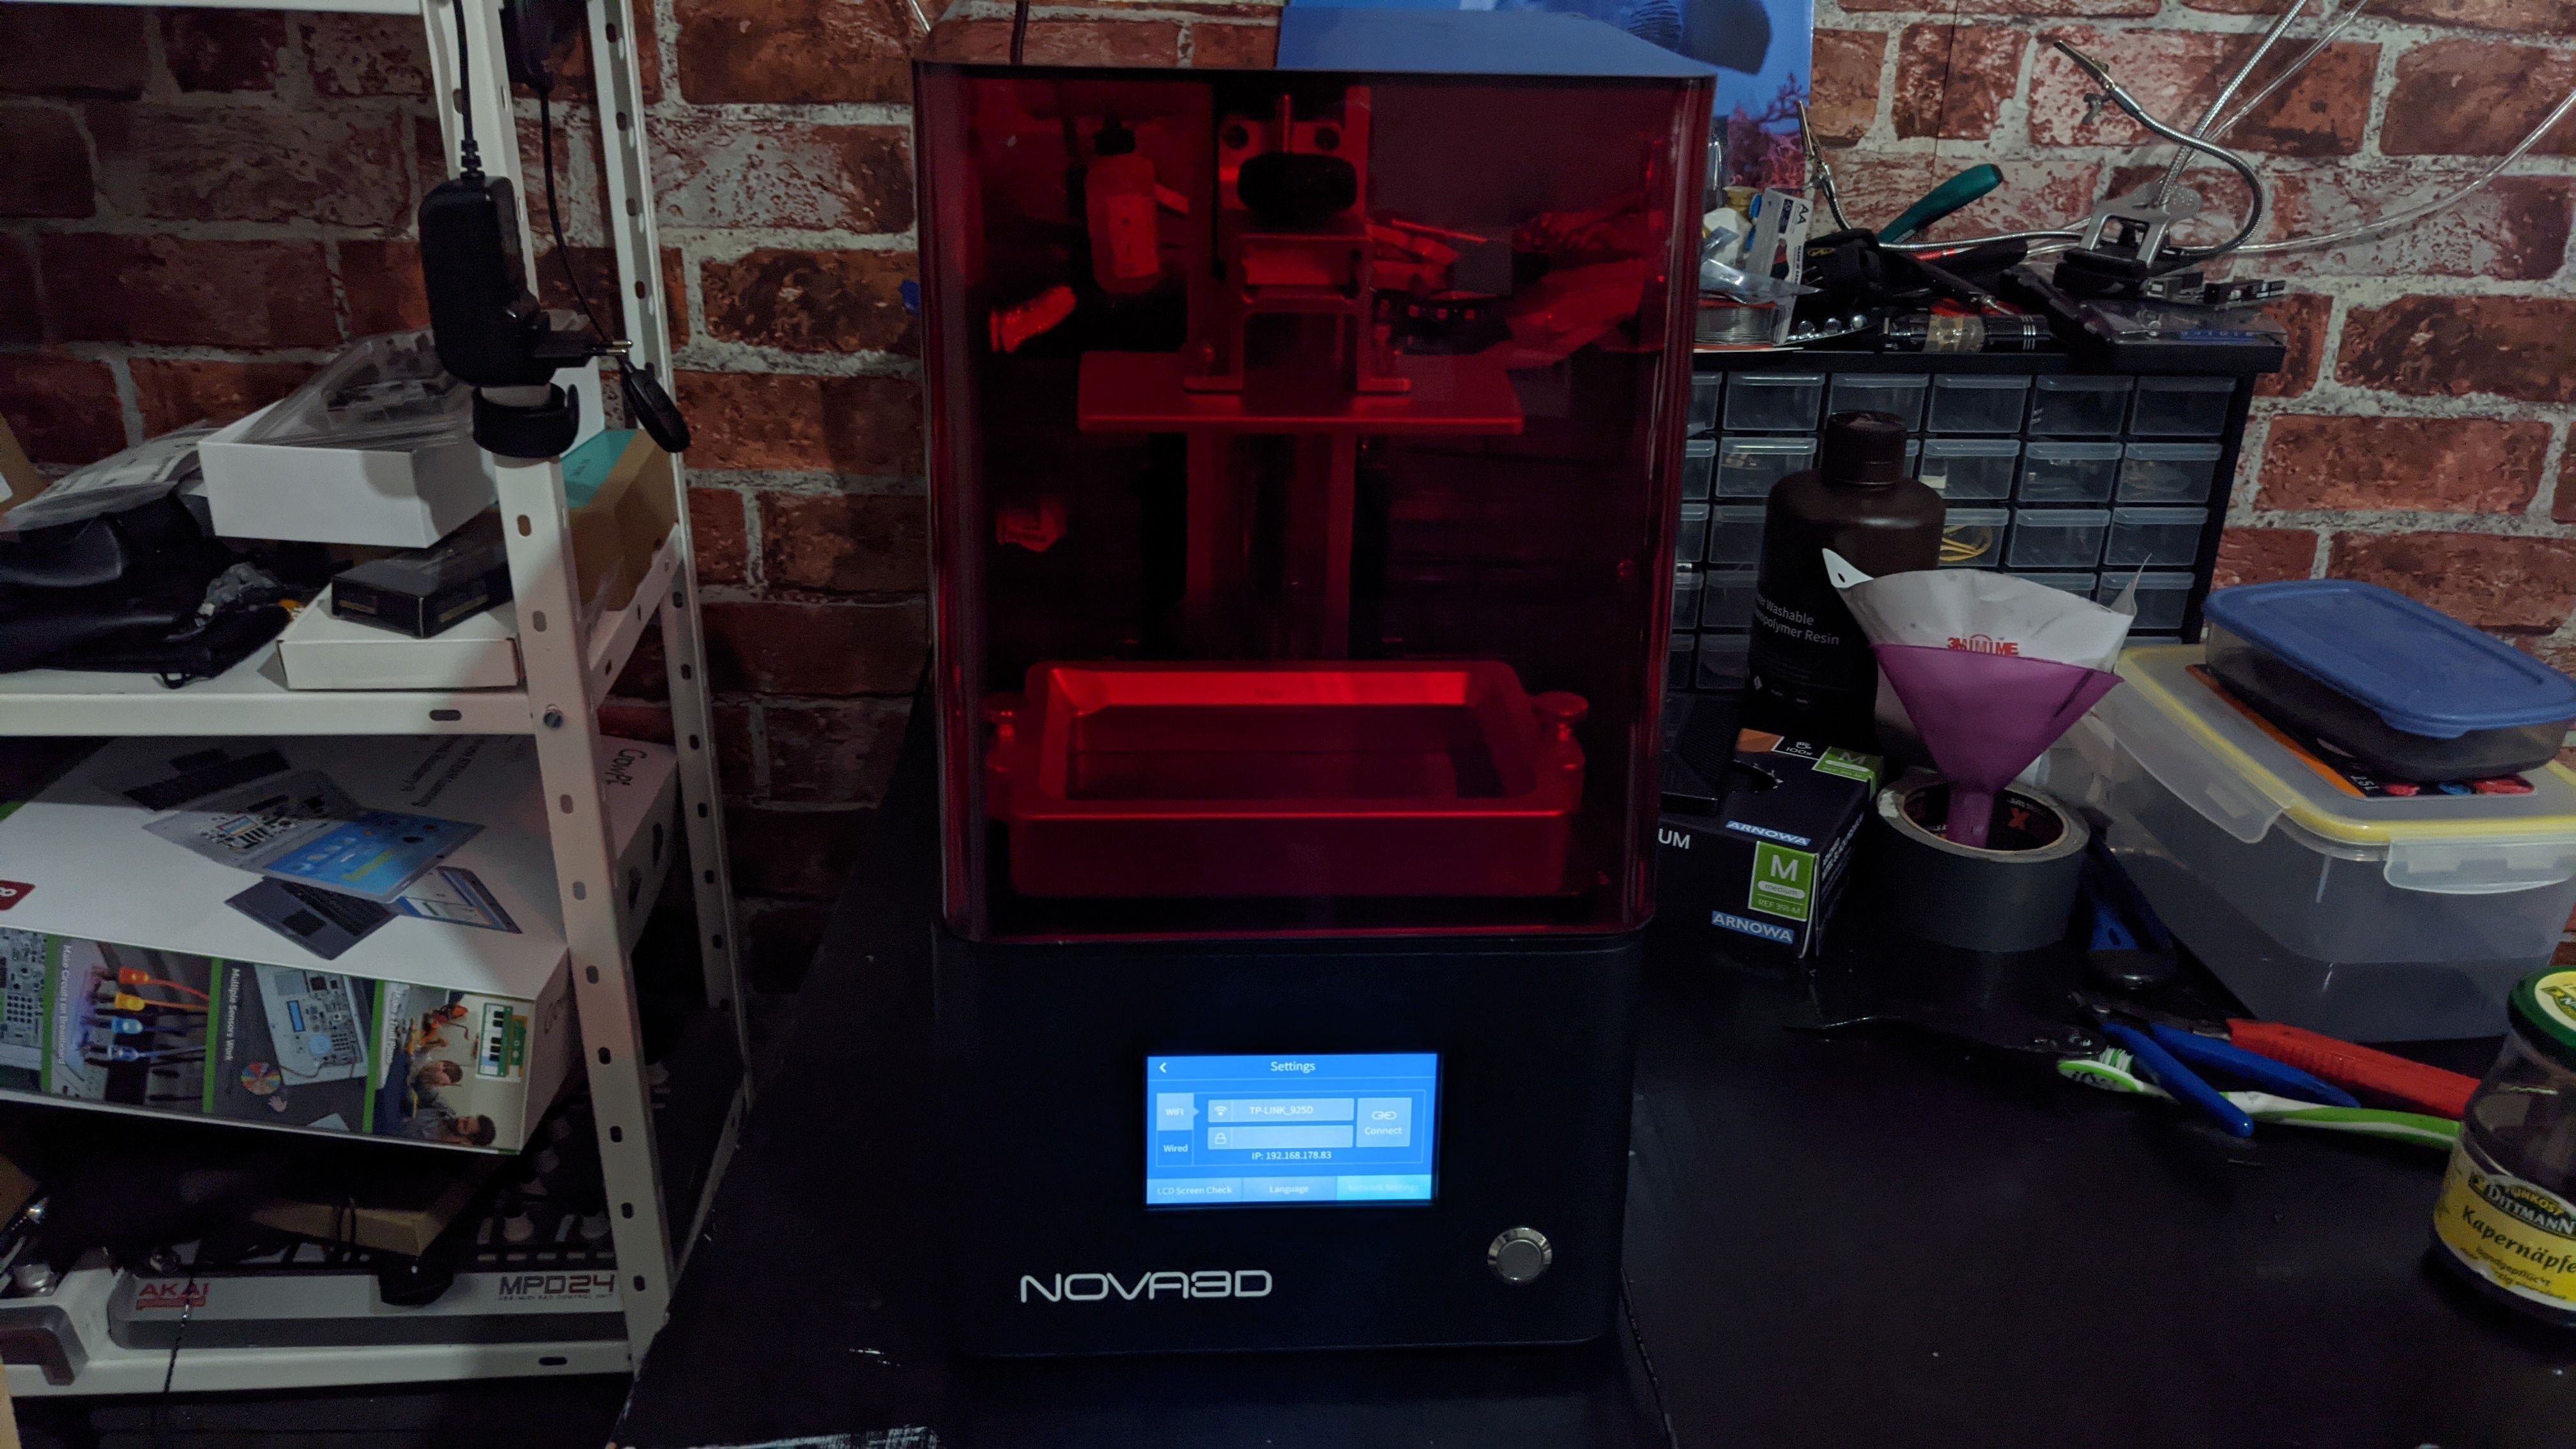 Nova3d Front - Nova3d Bene4 Mono: una straordinaria stampante in resina delusa dal software proprietario